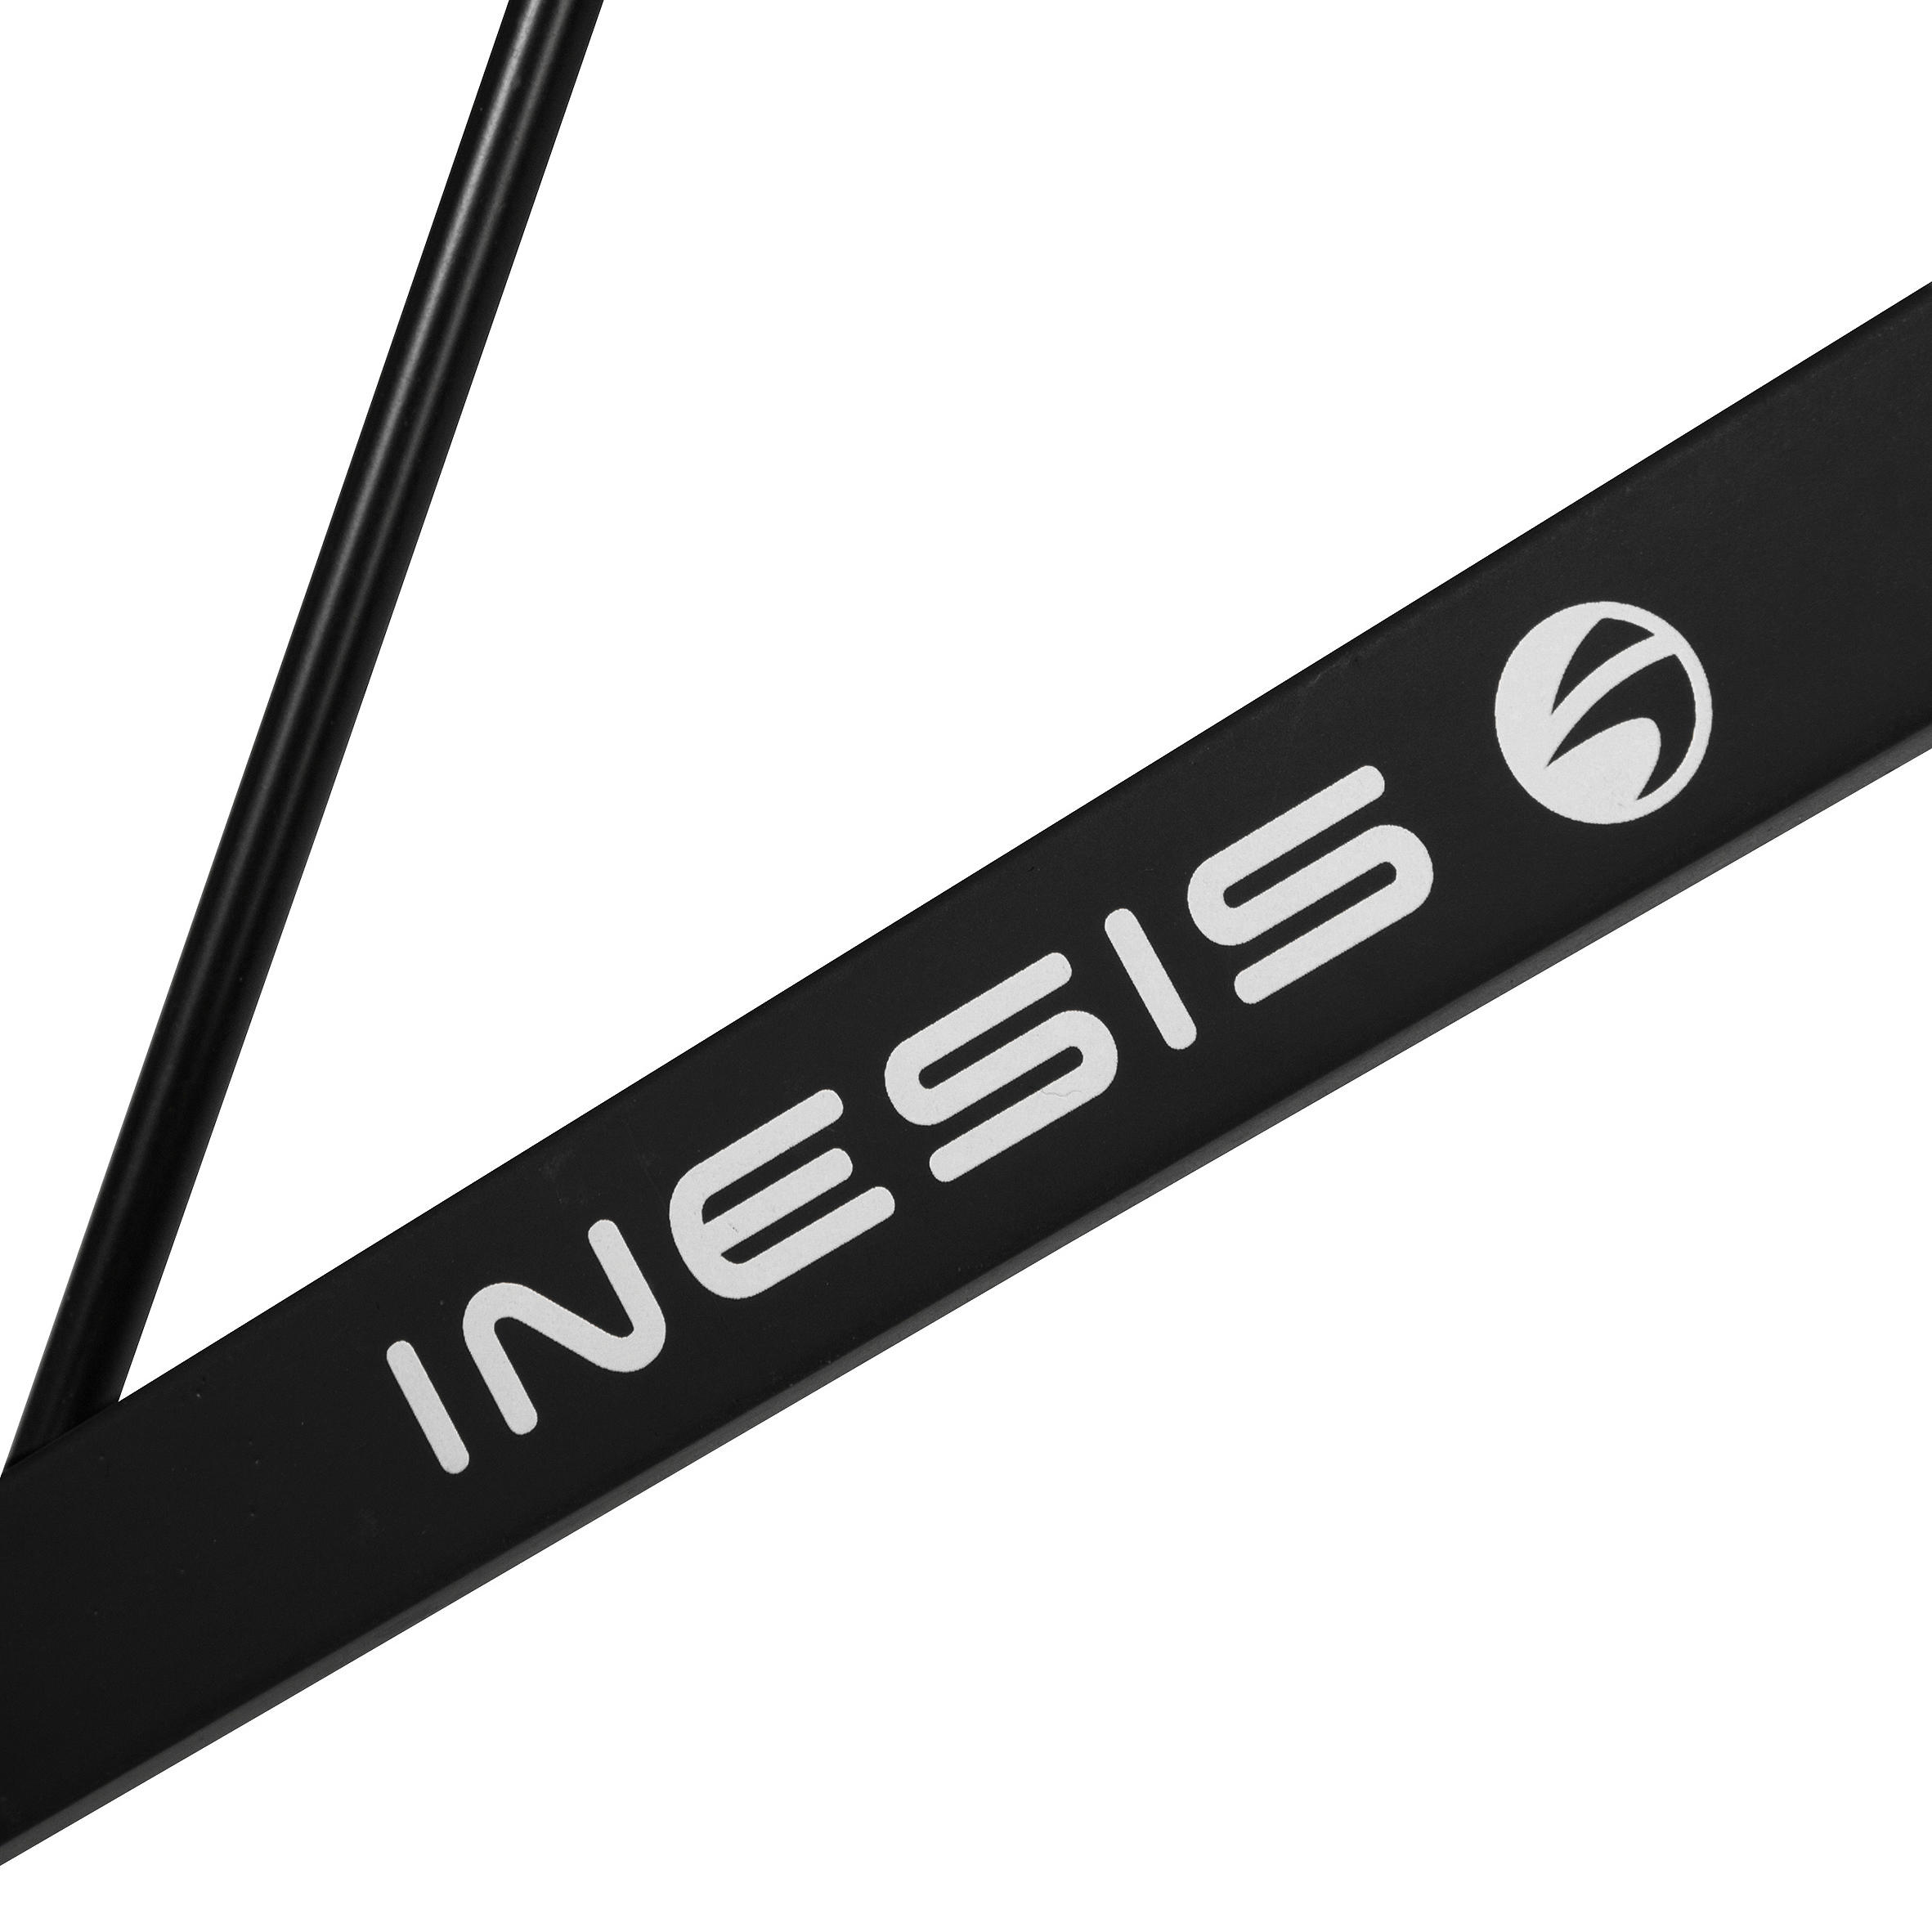 2-Wheel Golf Trolley - Inesis Black - INESIS